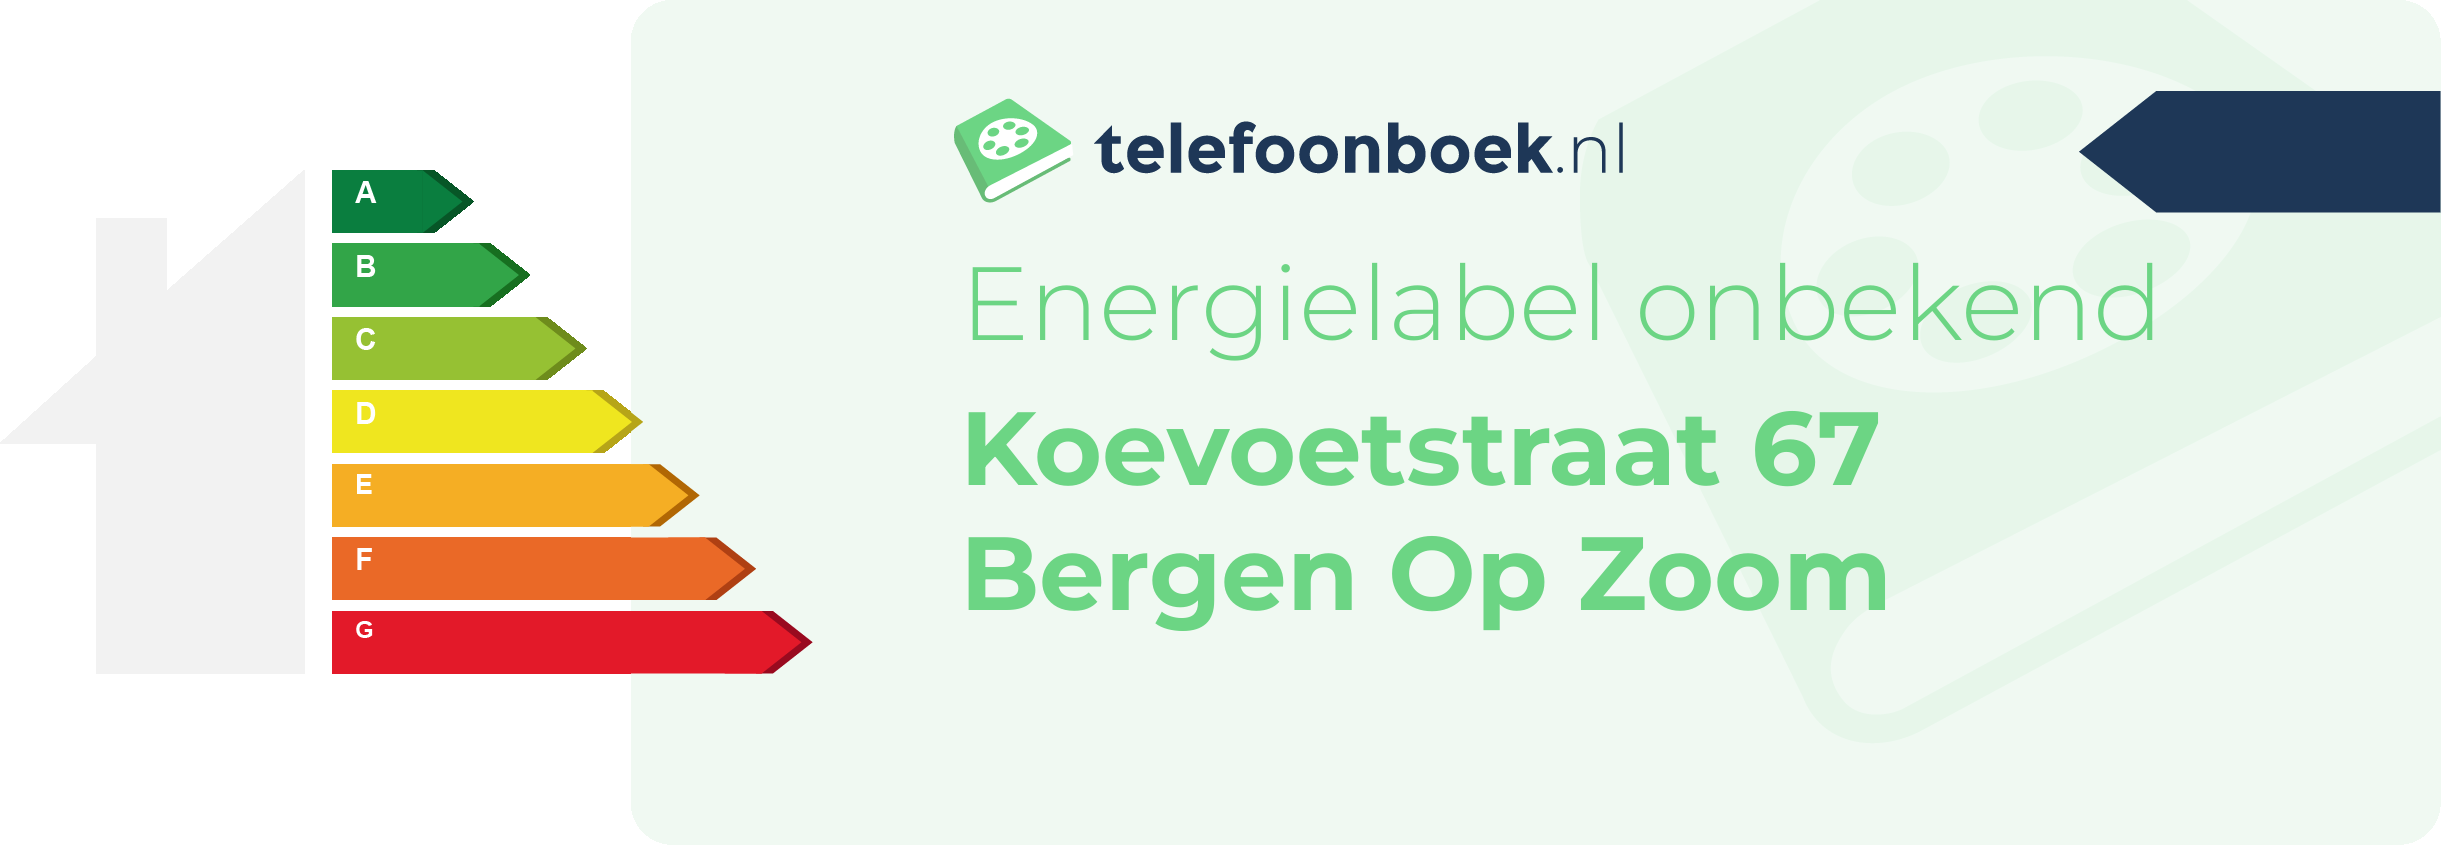 Energielabel Koevoetstraat 67 Bergen Op Zoom